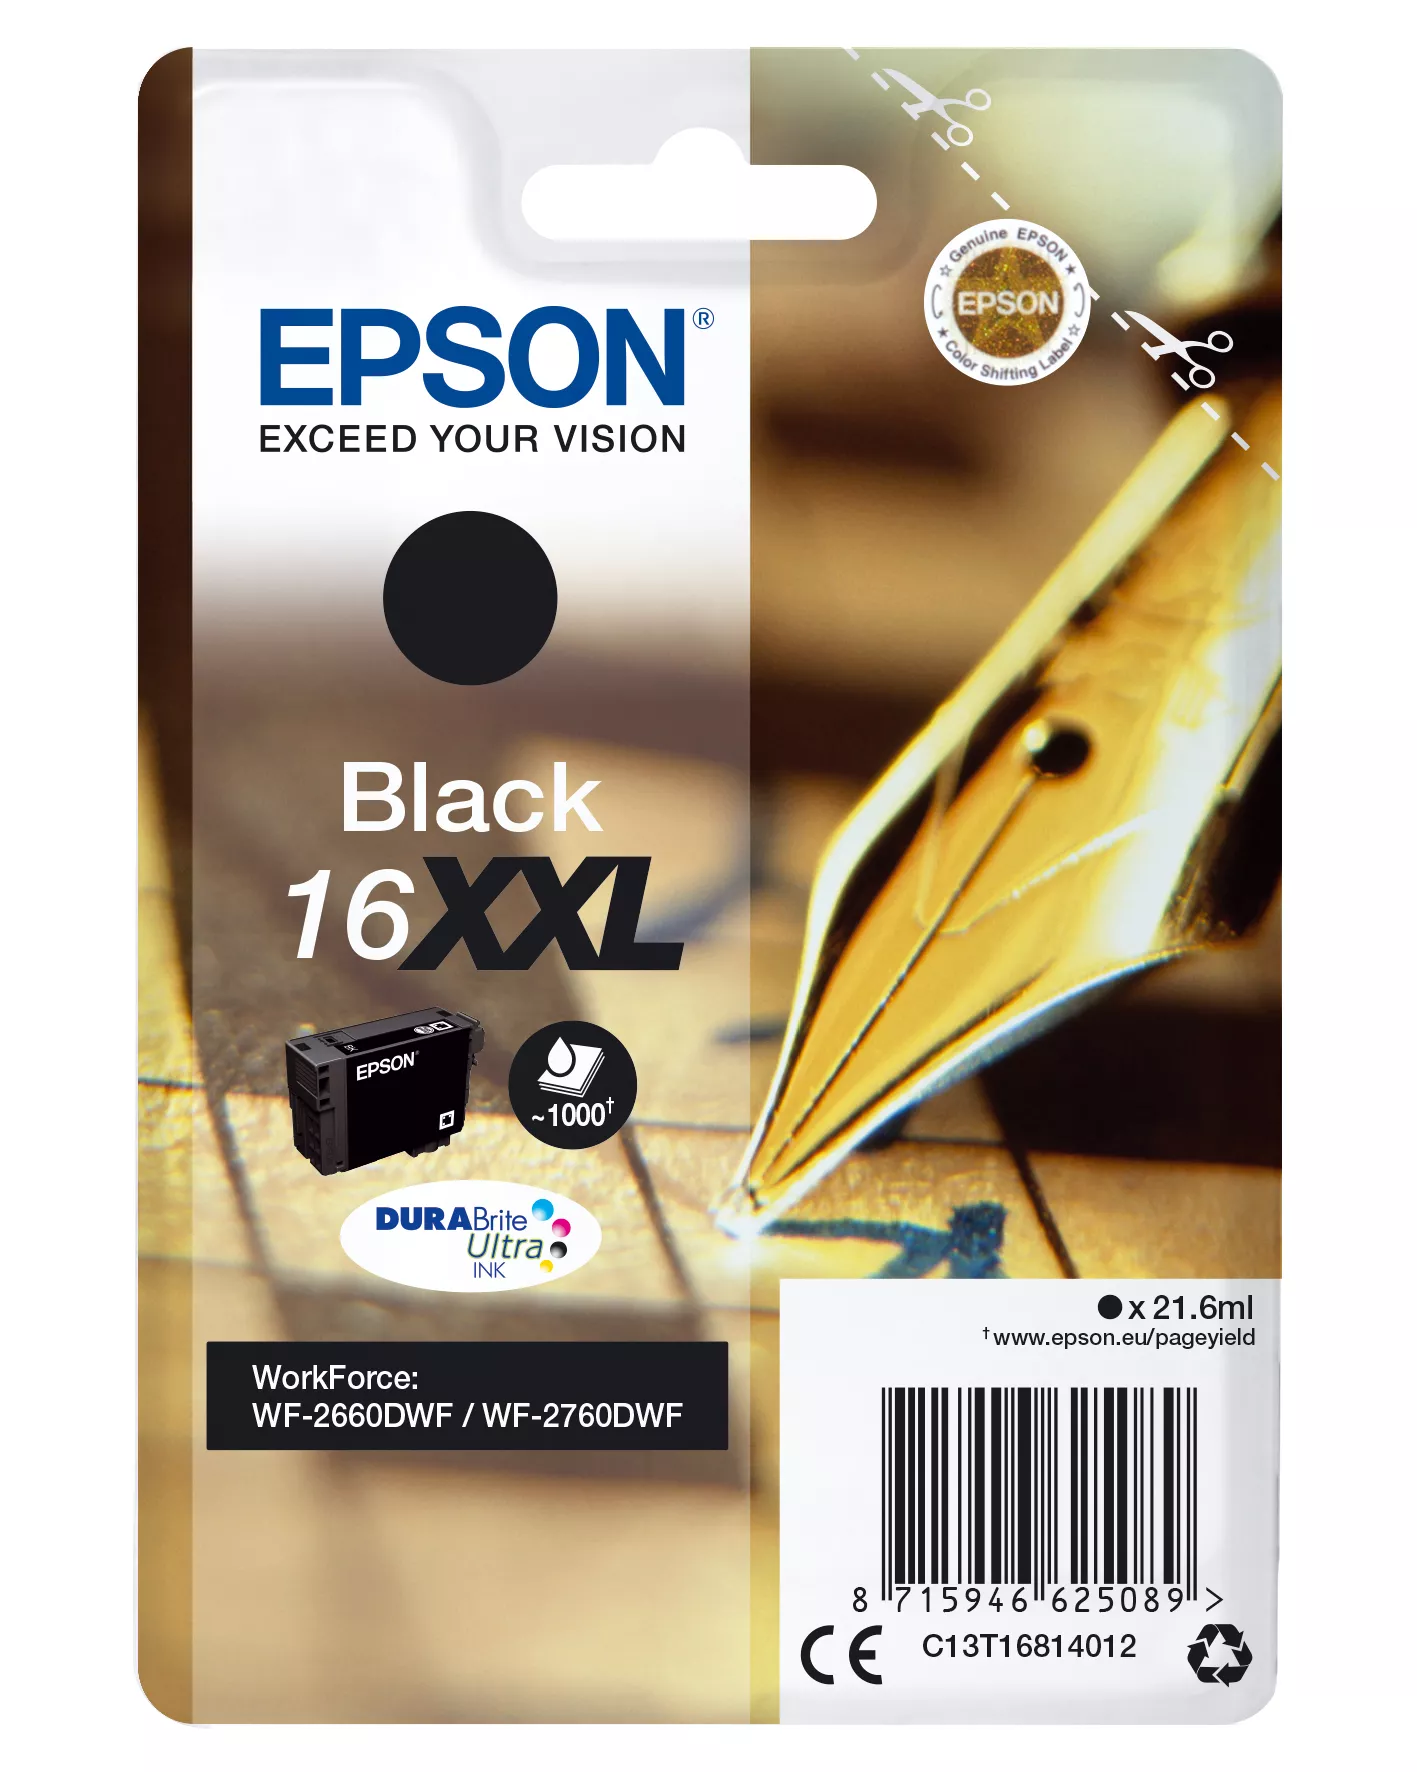 Achat EPSON 16XXL cartouche dencre noir très haute capacité 1 - 8715946625096